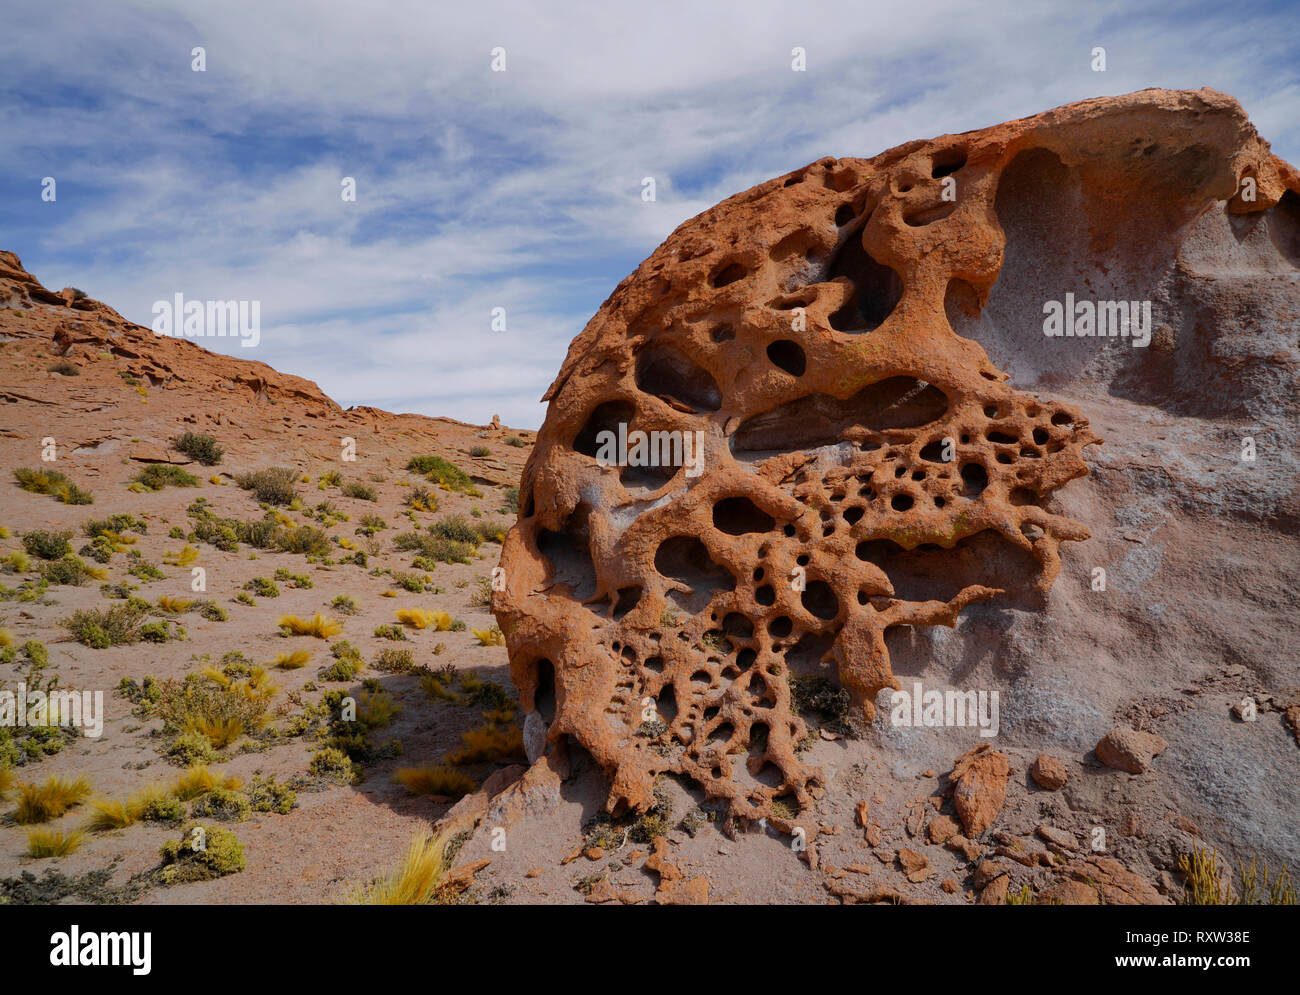 L'érosion a enlevé une couche de roche en dessous de la couche de surface, de la création de formations rocheuses inhabituelles sur l'Altiplano dans le désert d'Atacama au Chili, près de la frontière avec l'Argentine, l'Amérique du Sud Banque D'Images